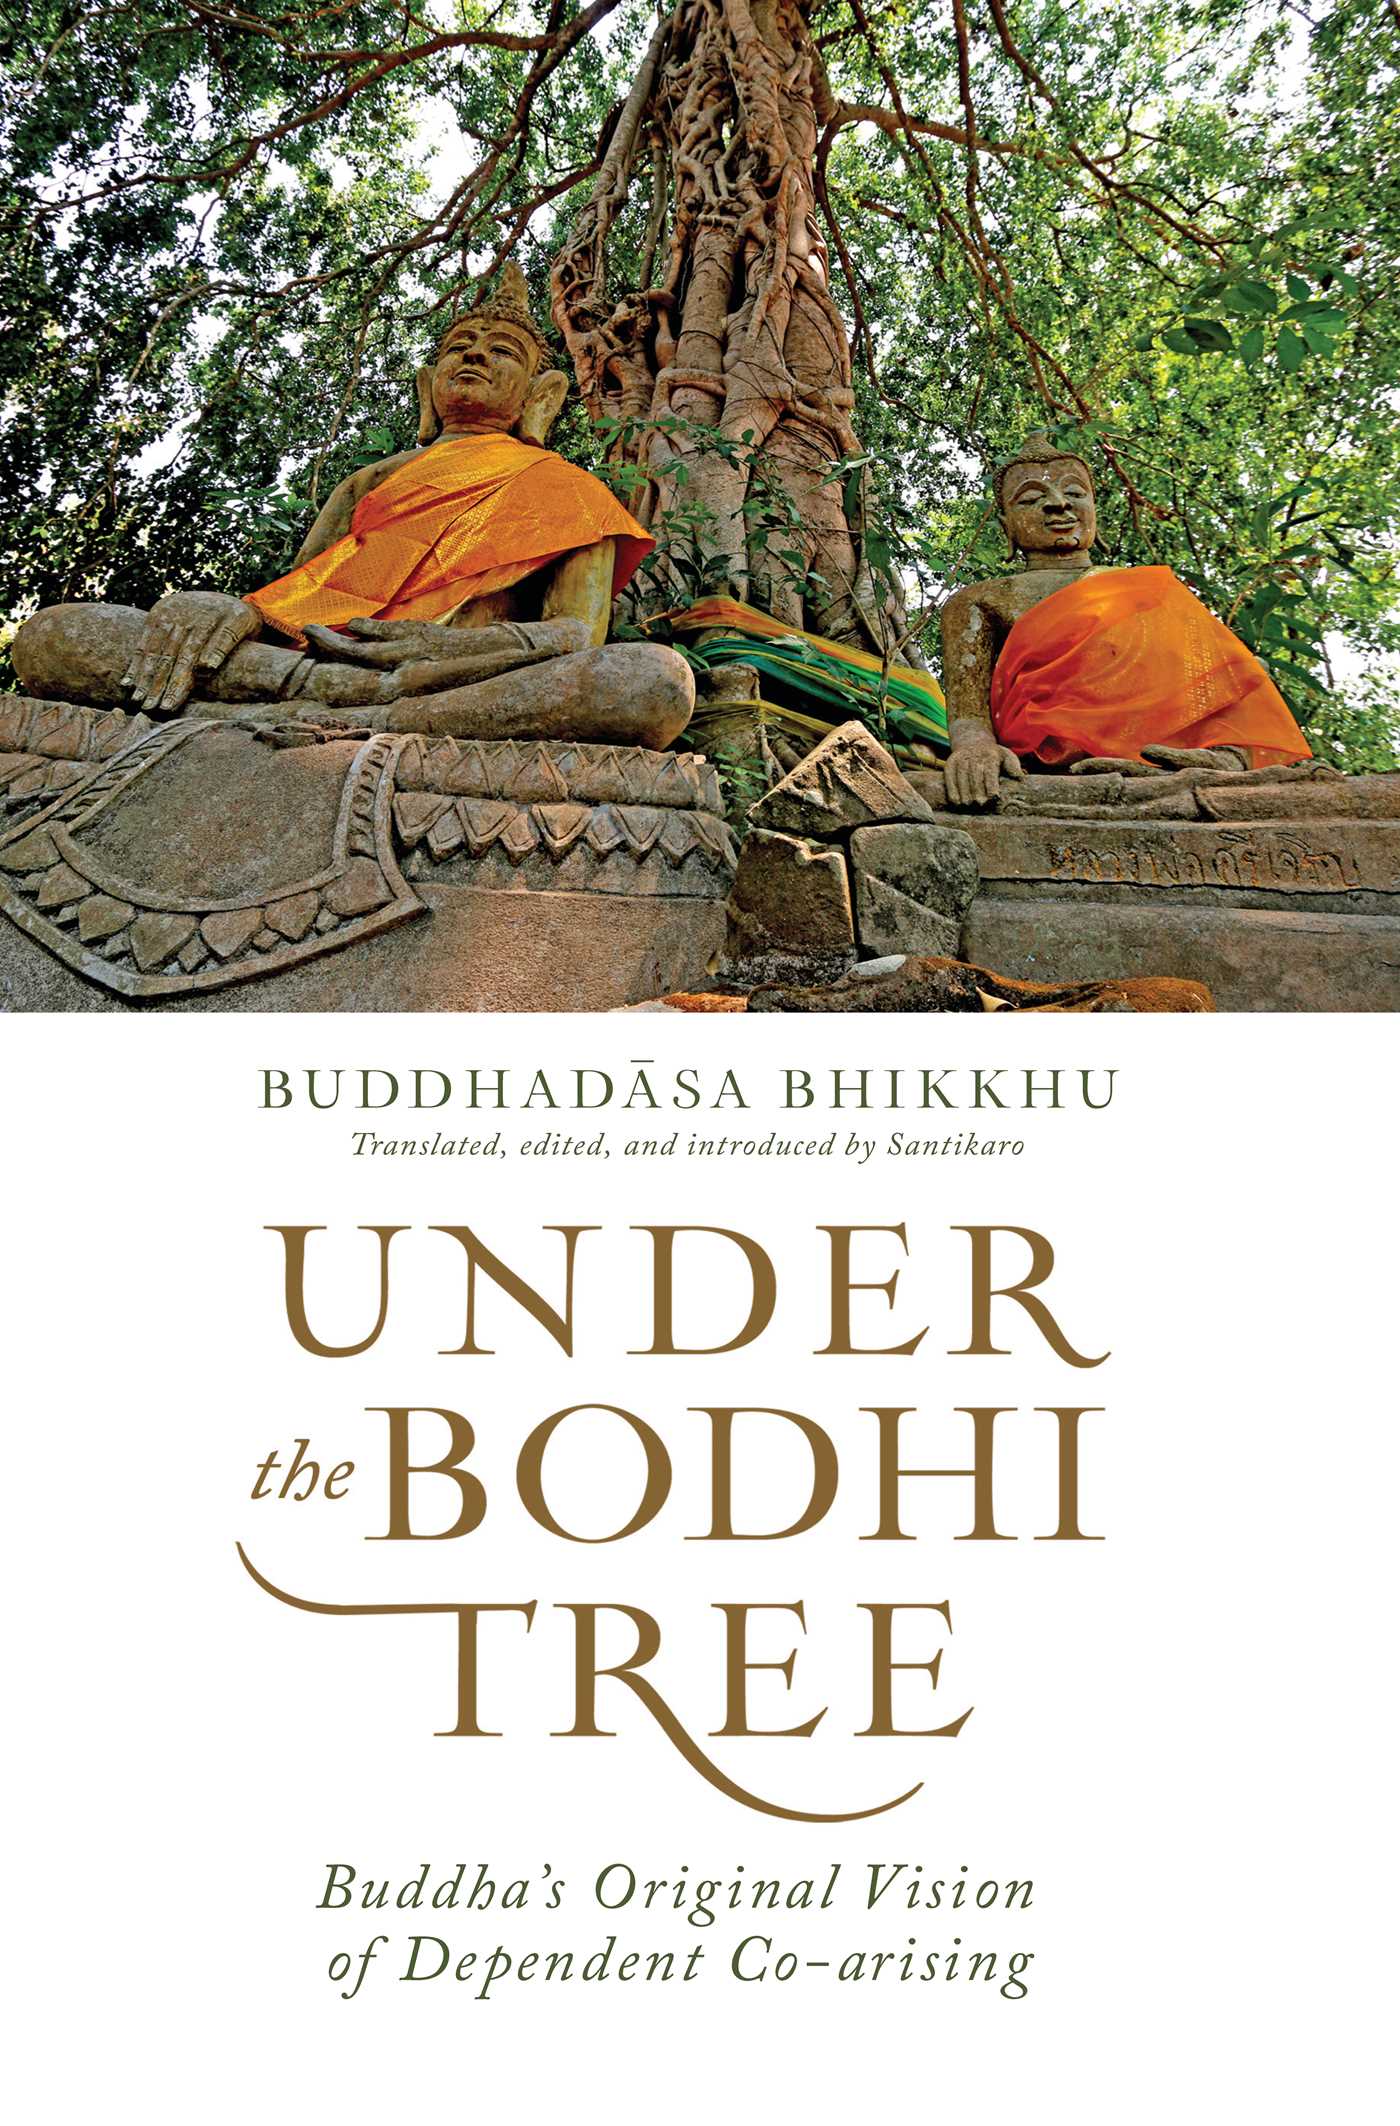 Under the Bodhi Tree | Book by Buddhadasa Bhikkhu, Santikaro ...